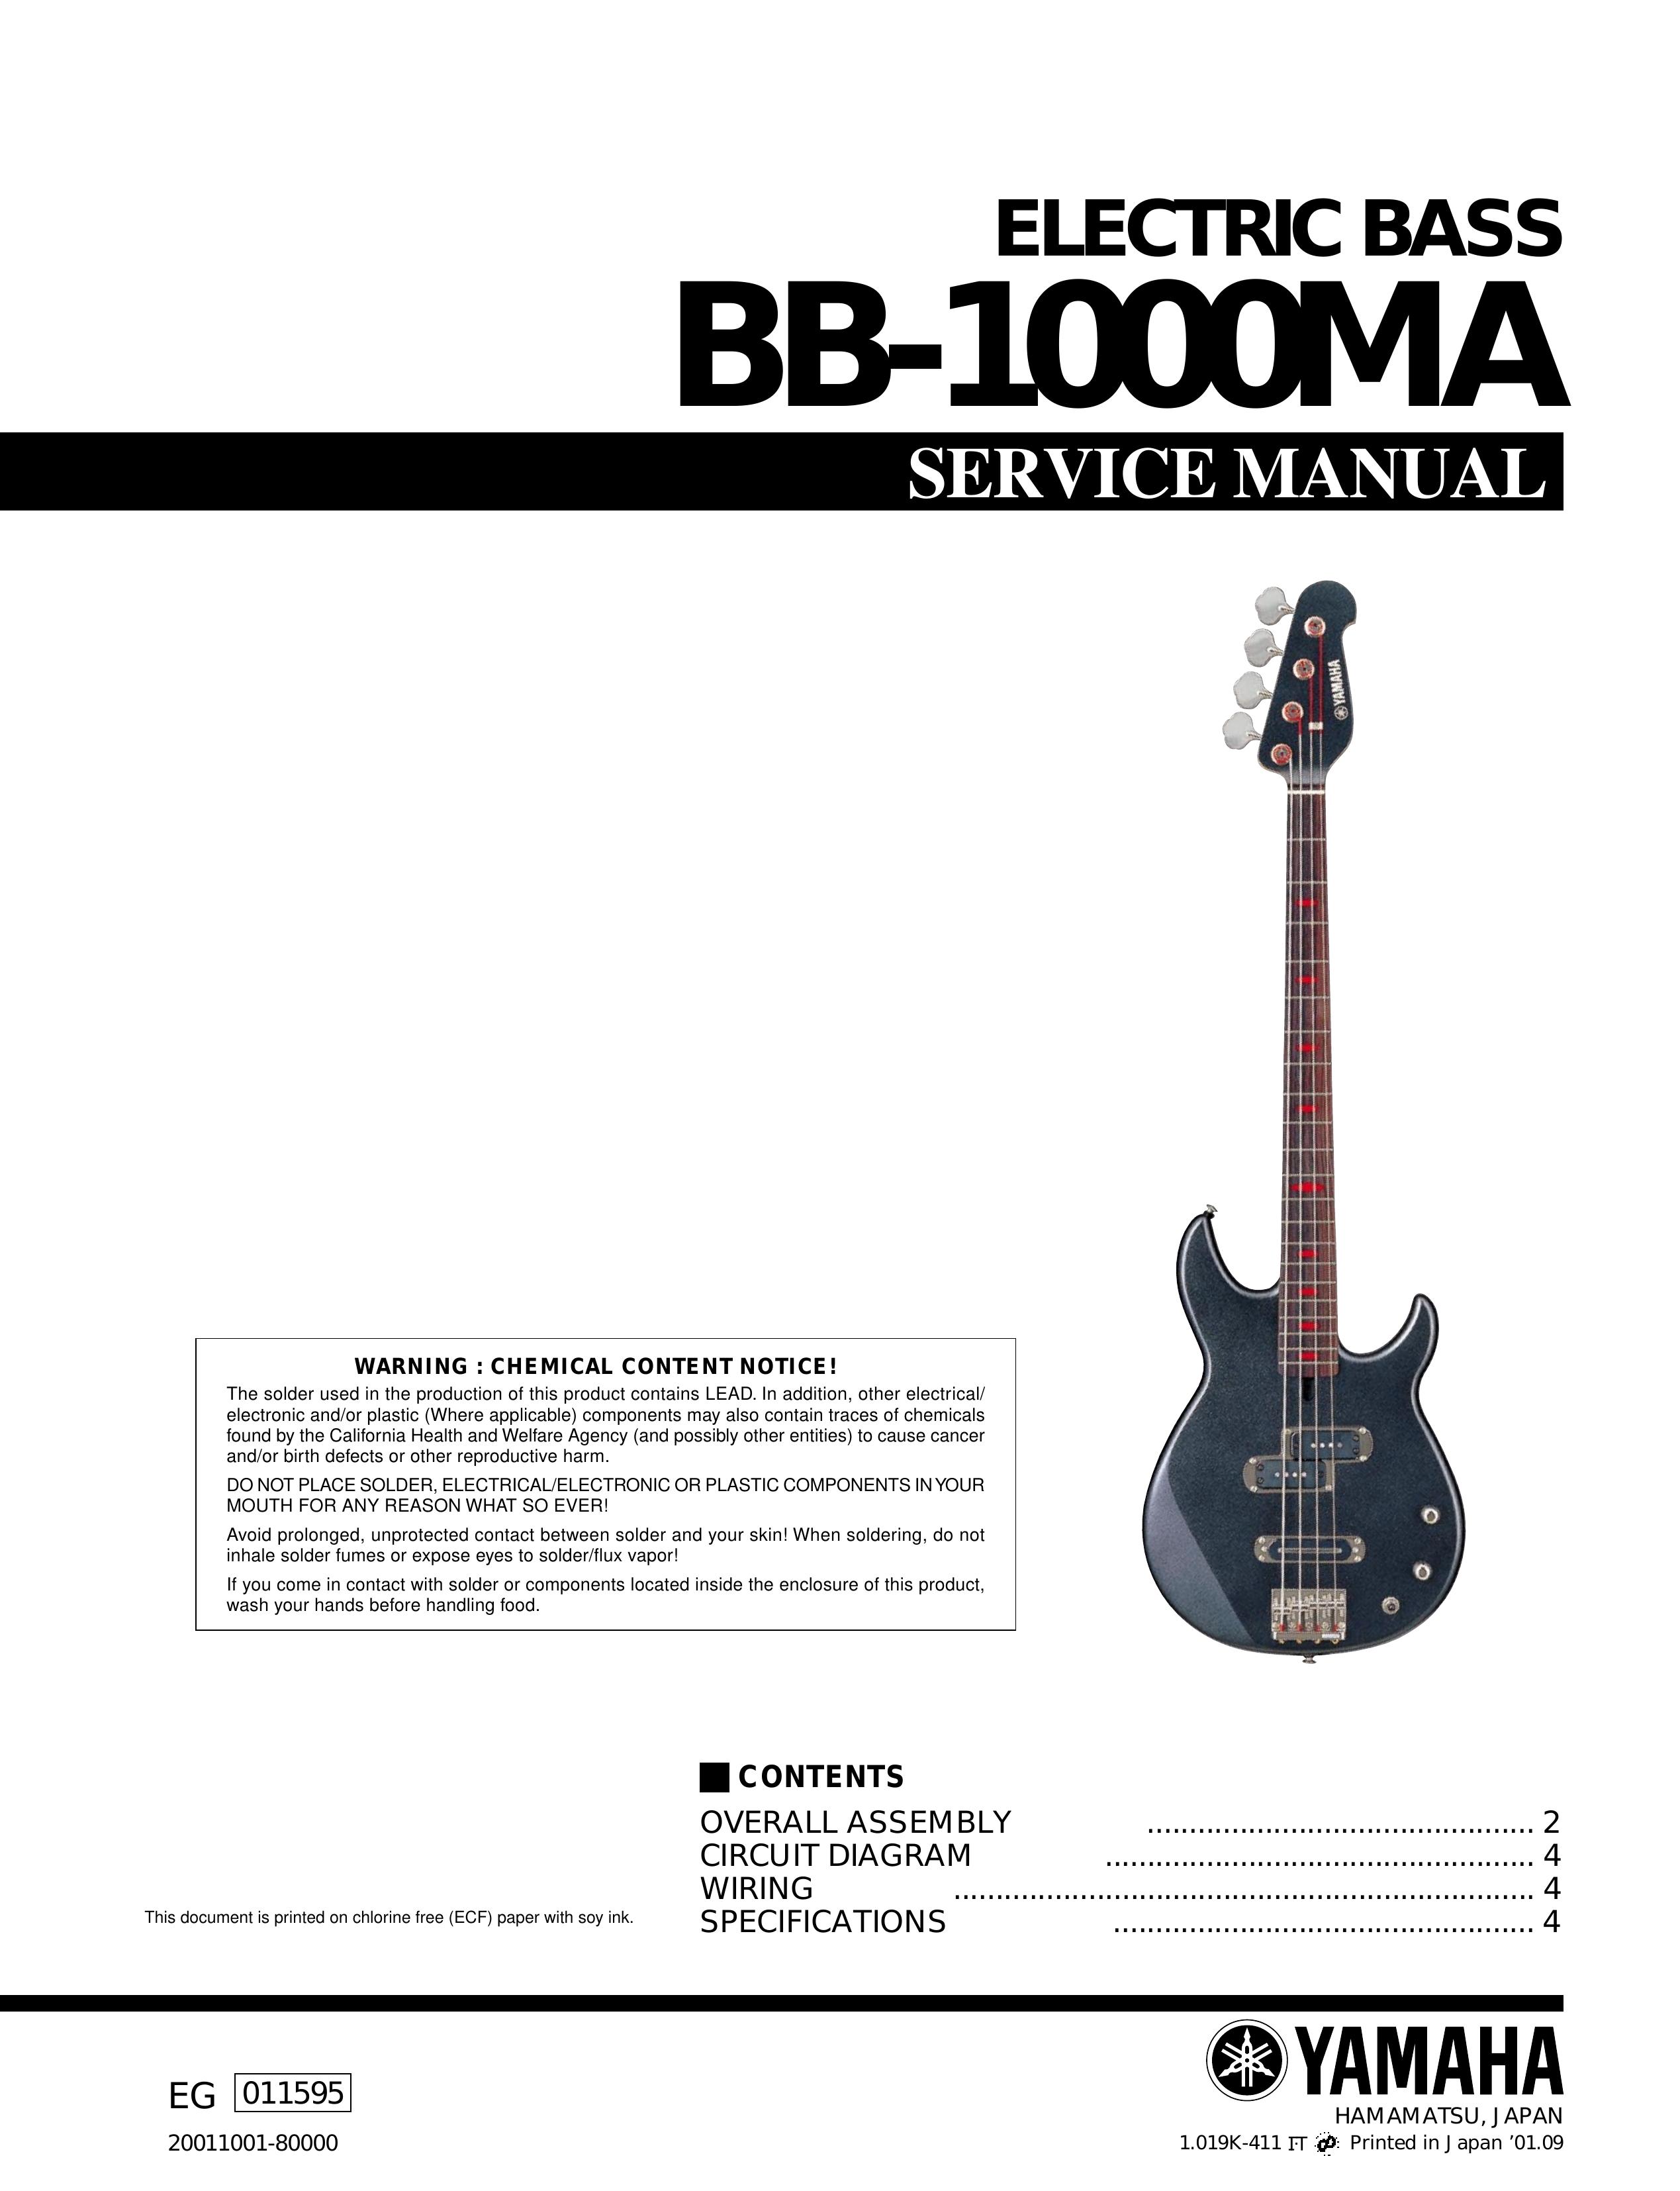 Yamaha Yamaha Electric Bass Guitar Scuba Diving Equipment User Manual